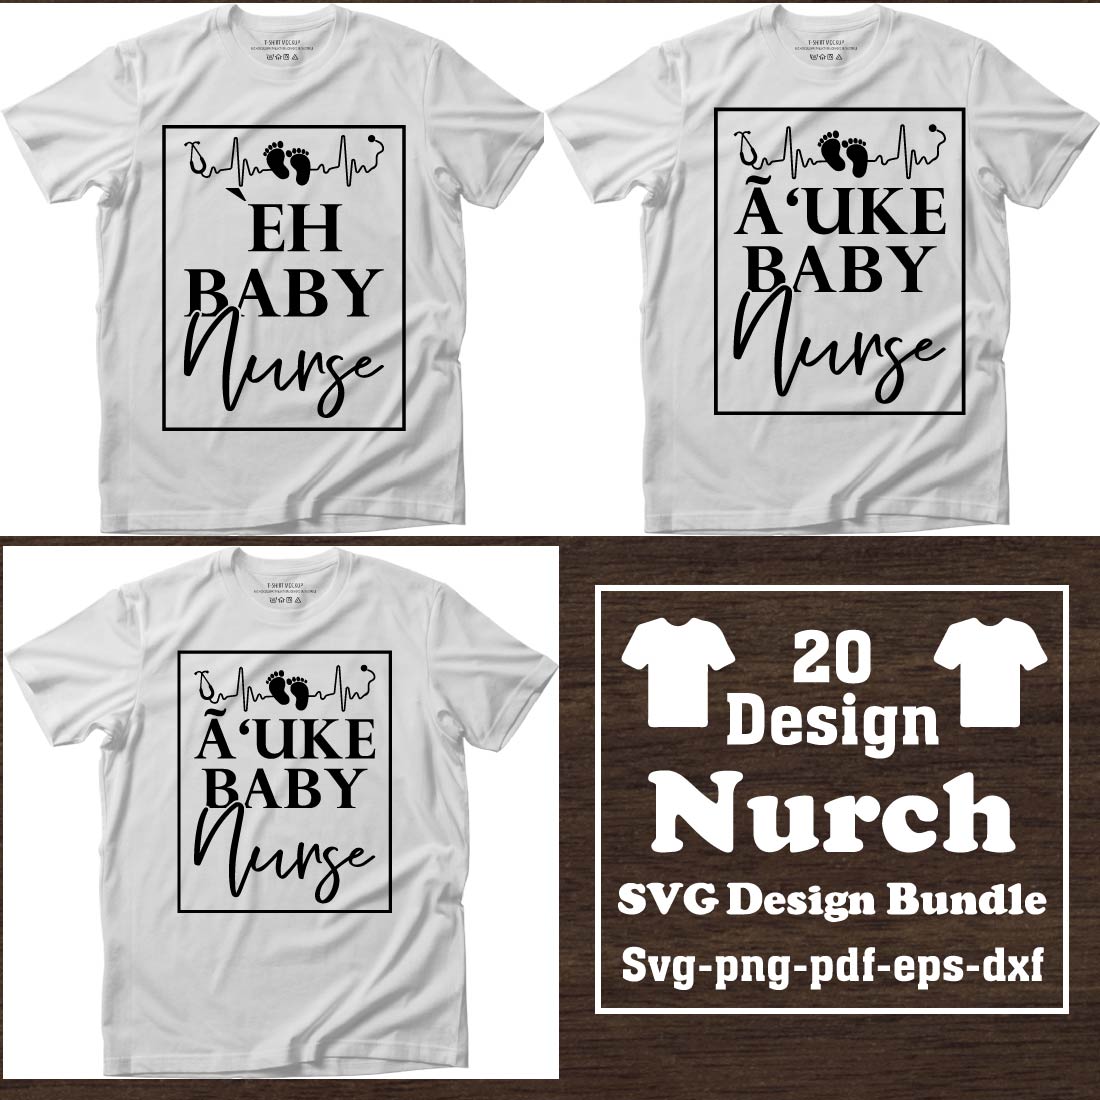 Nurse T-shirt Design Bundle cover image.